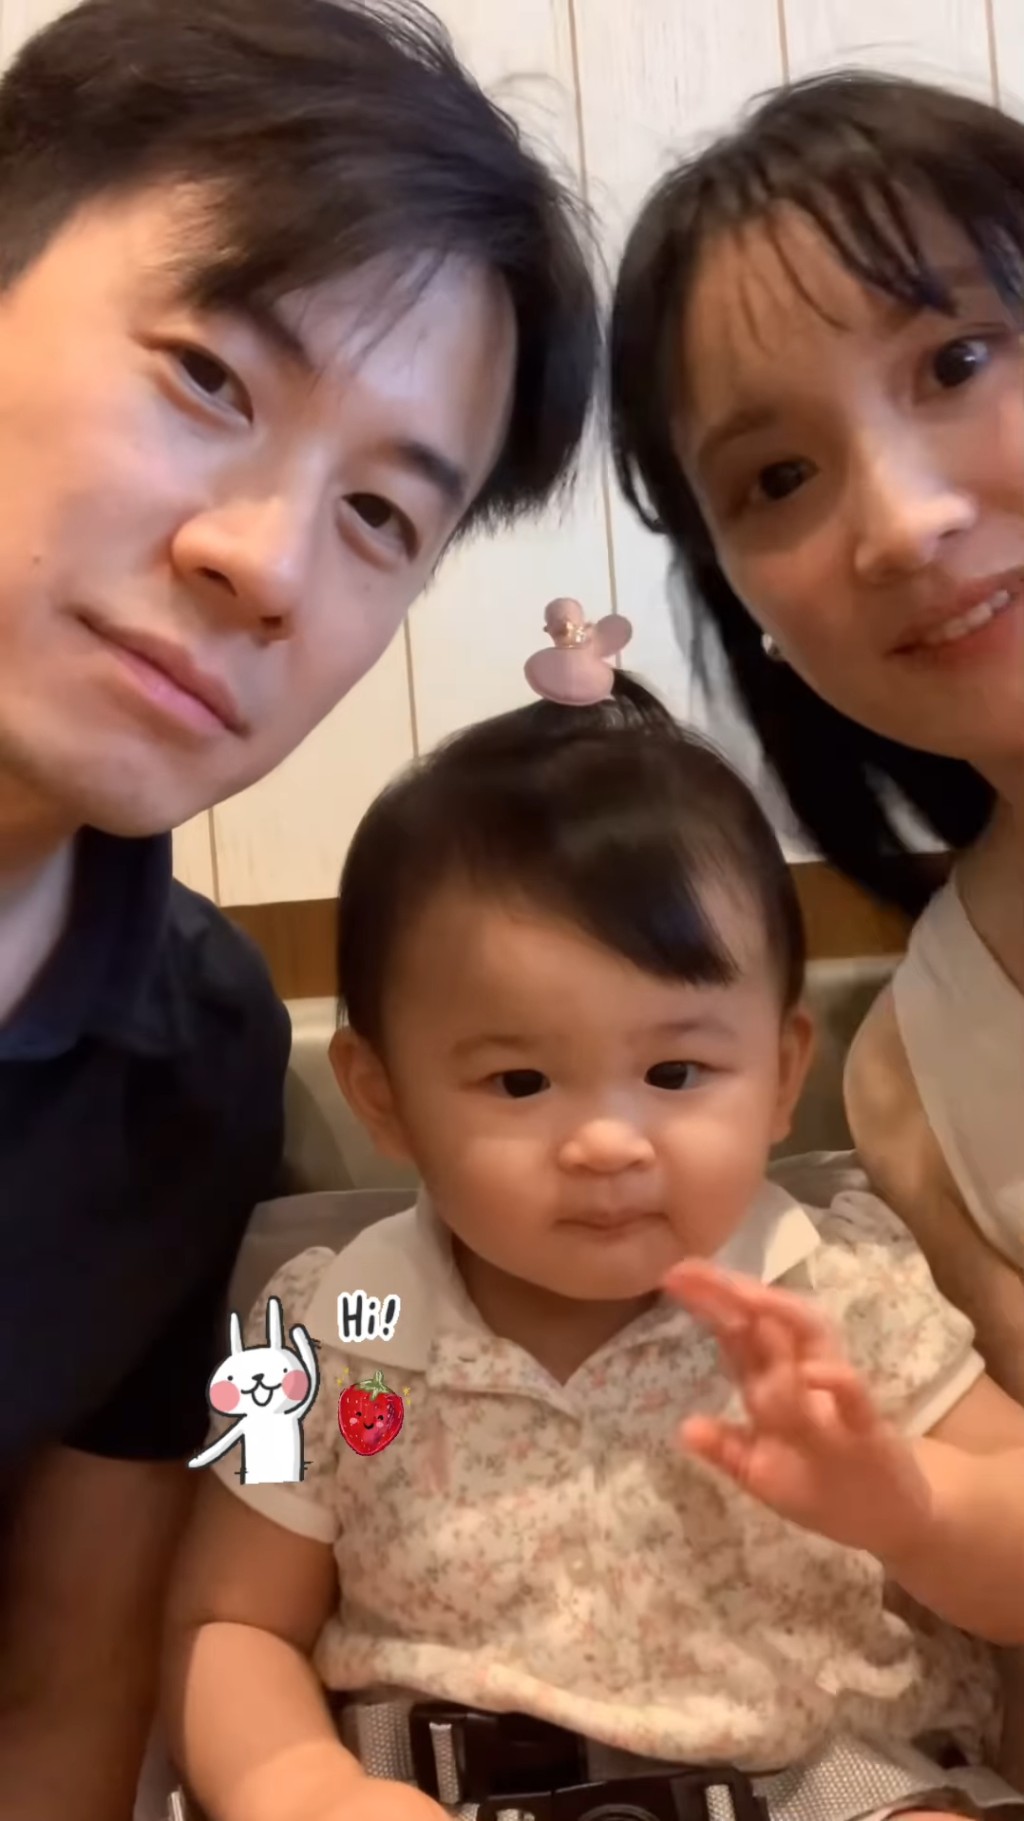 林佑蔚昨日（6日）在IG分享一段影片，见到她与老公及囡囡向镜头前挥手。